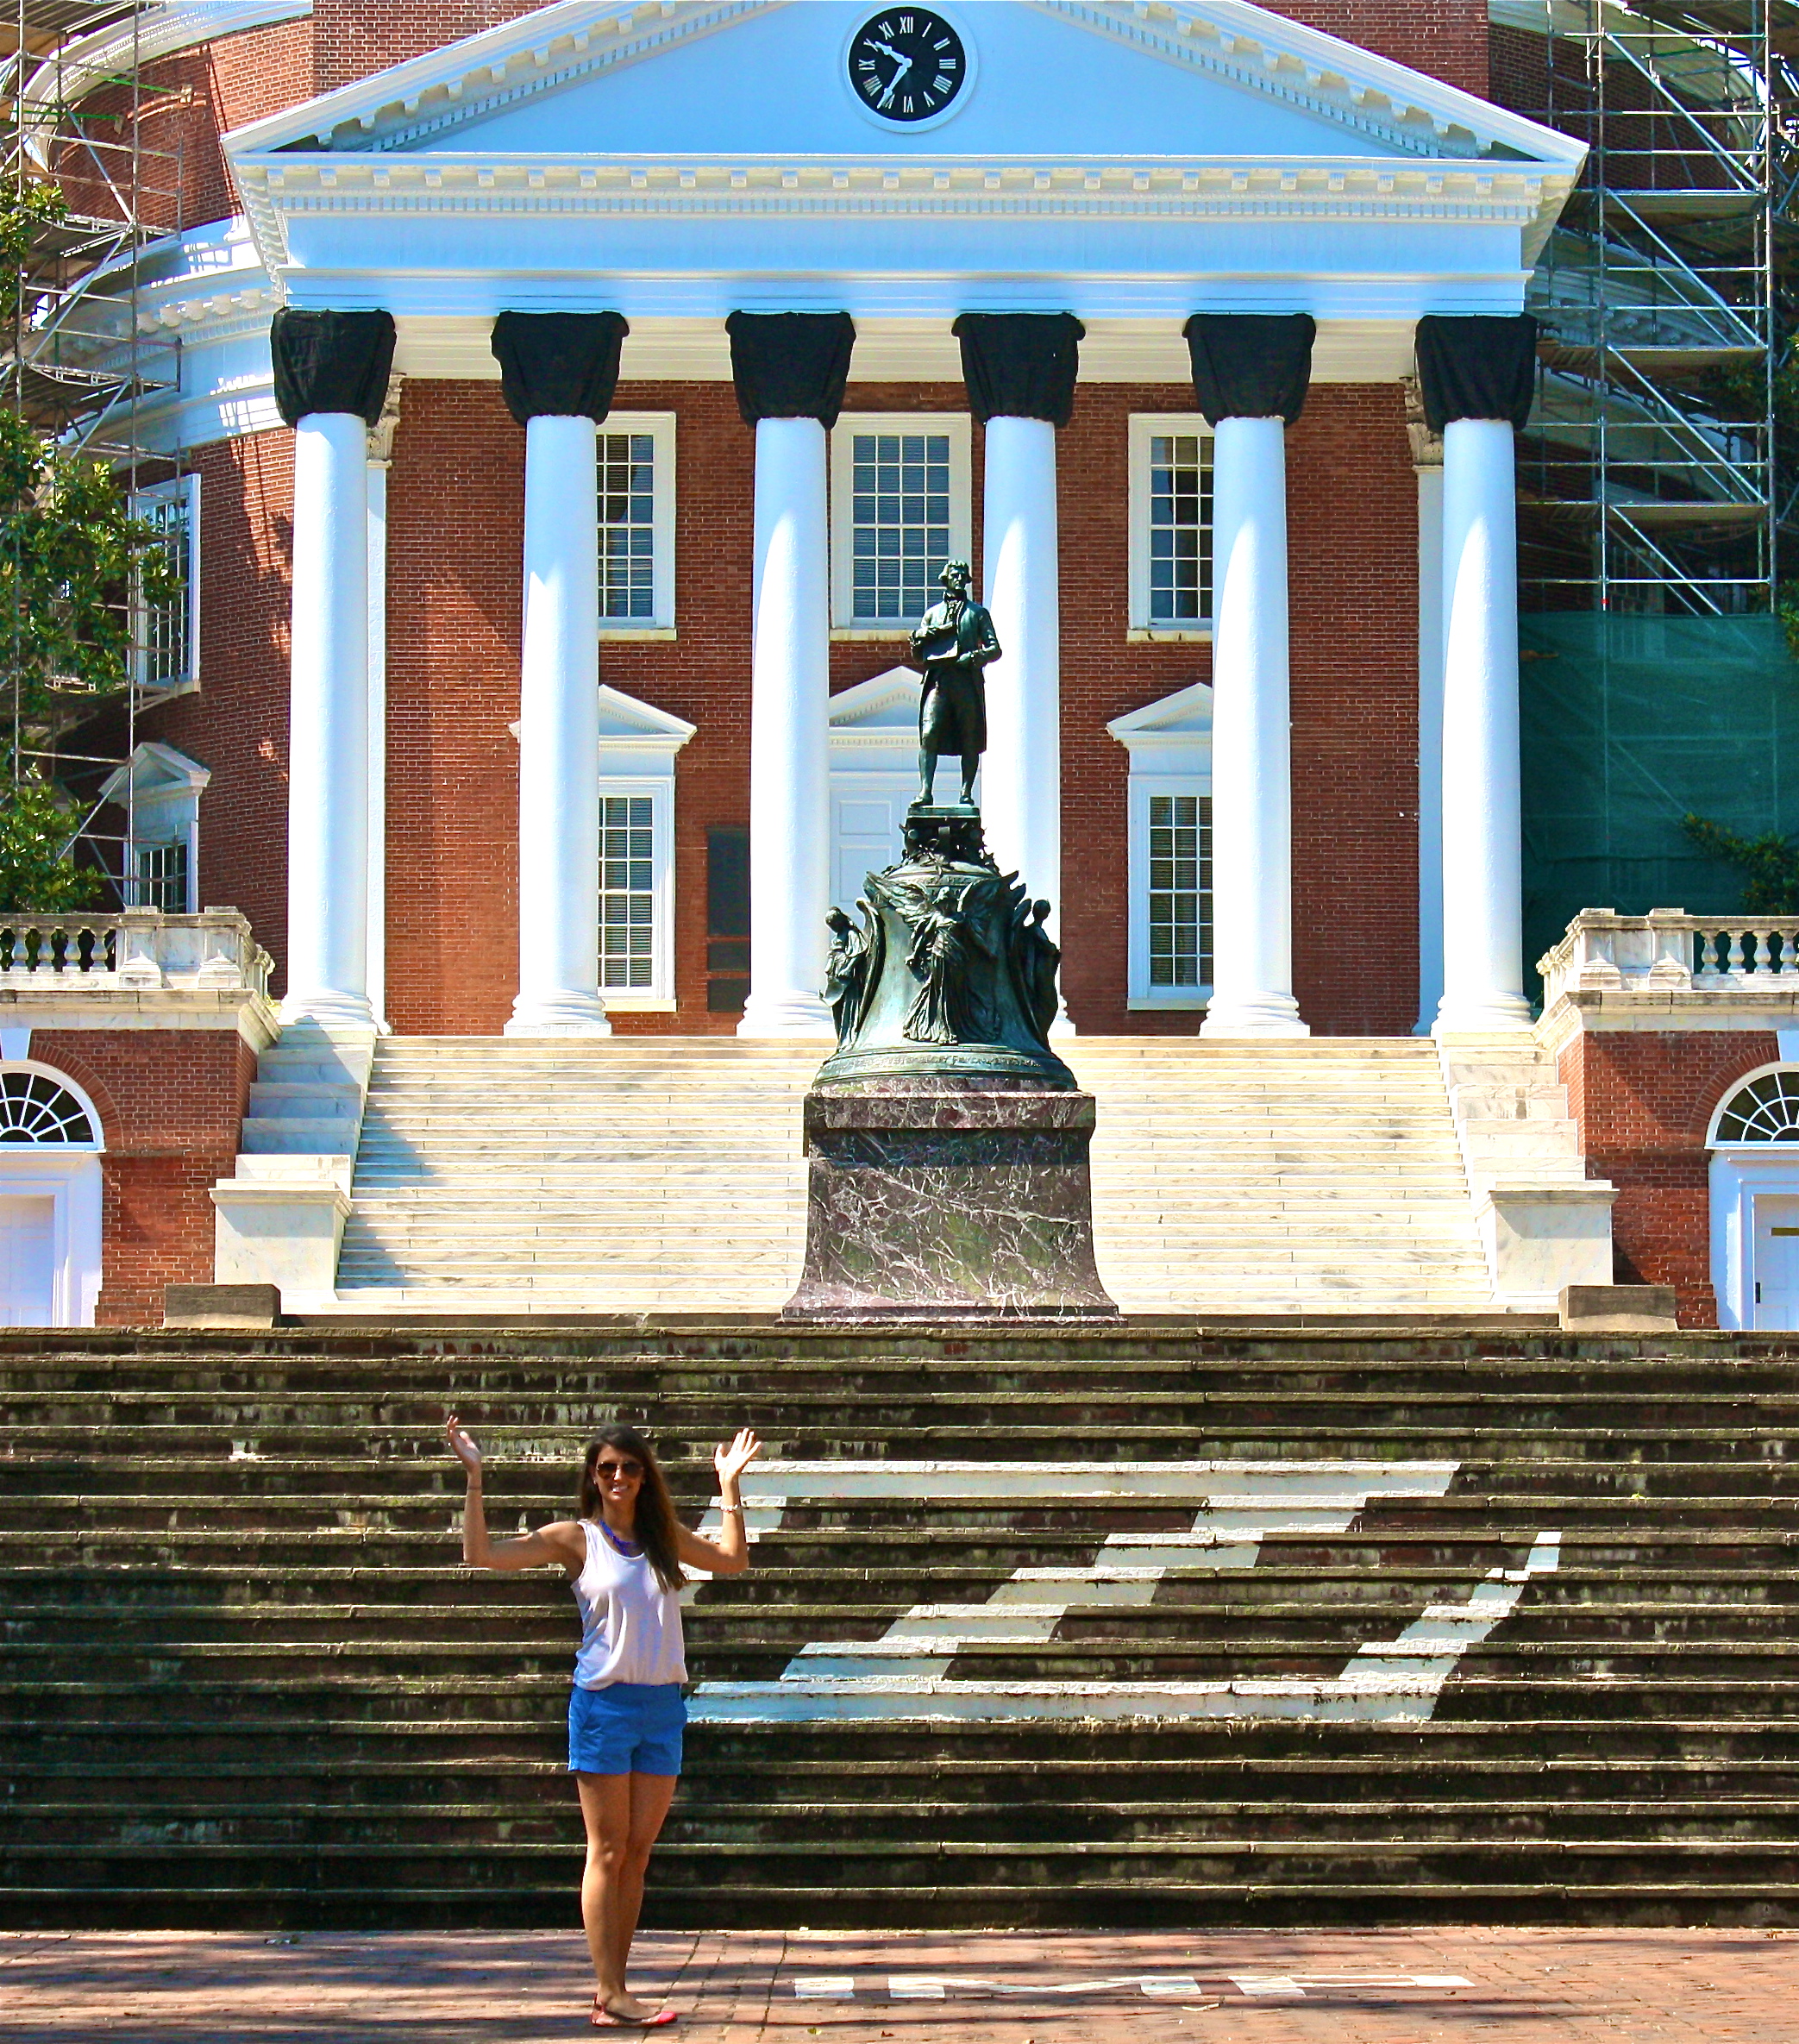 University of Virginia Charlottesville 